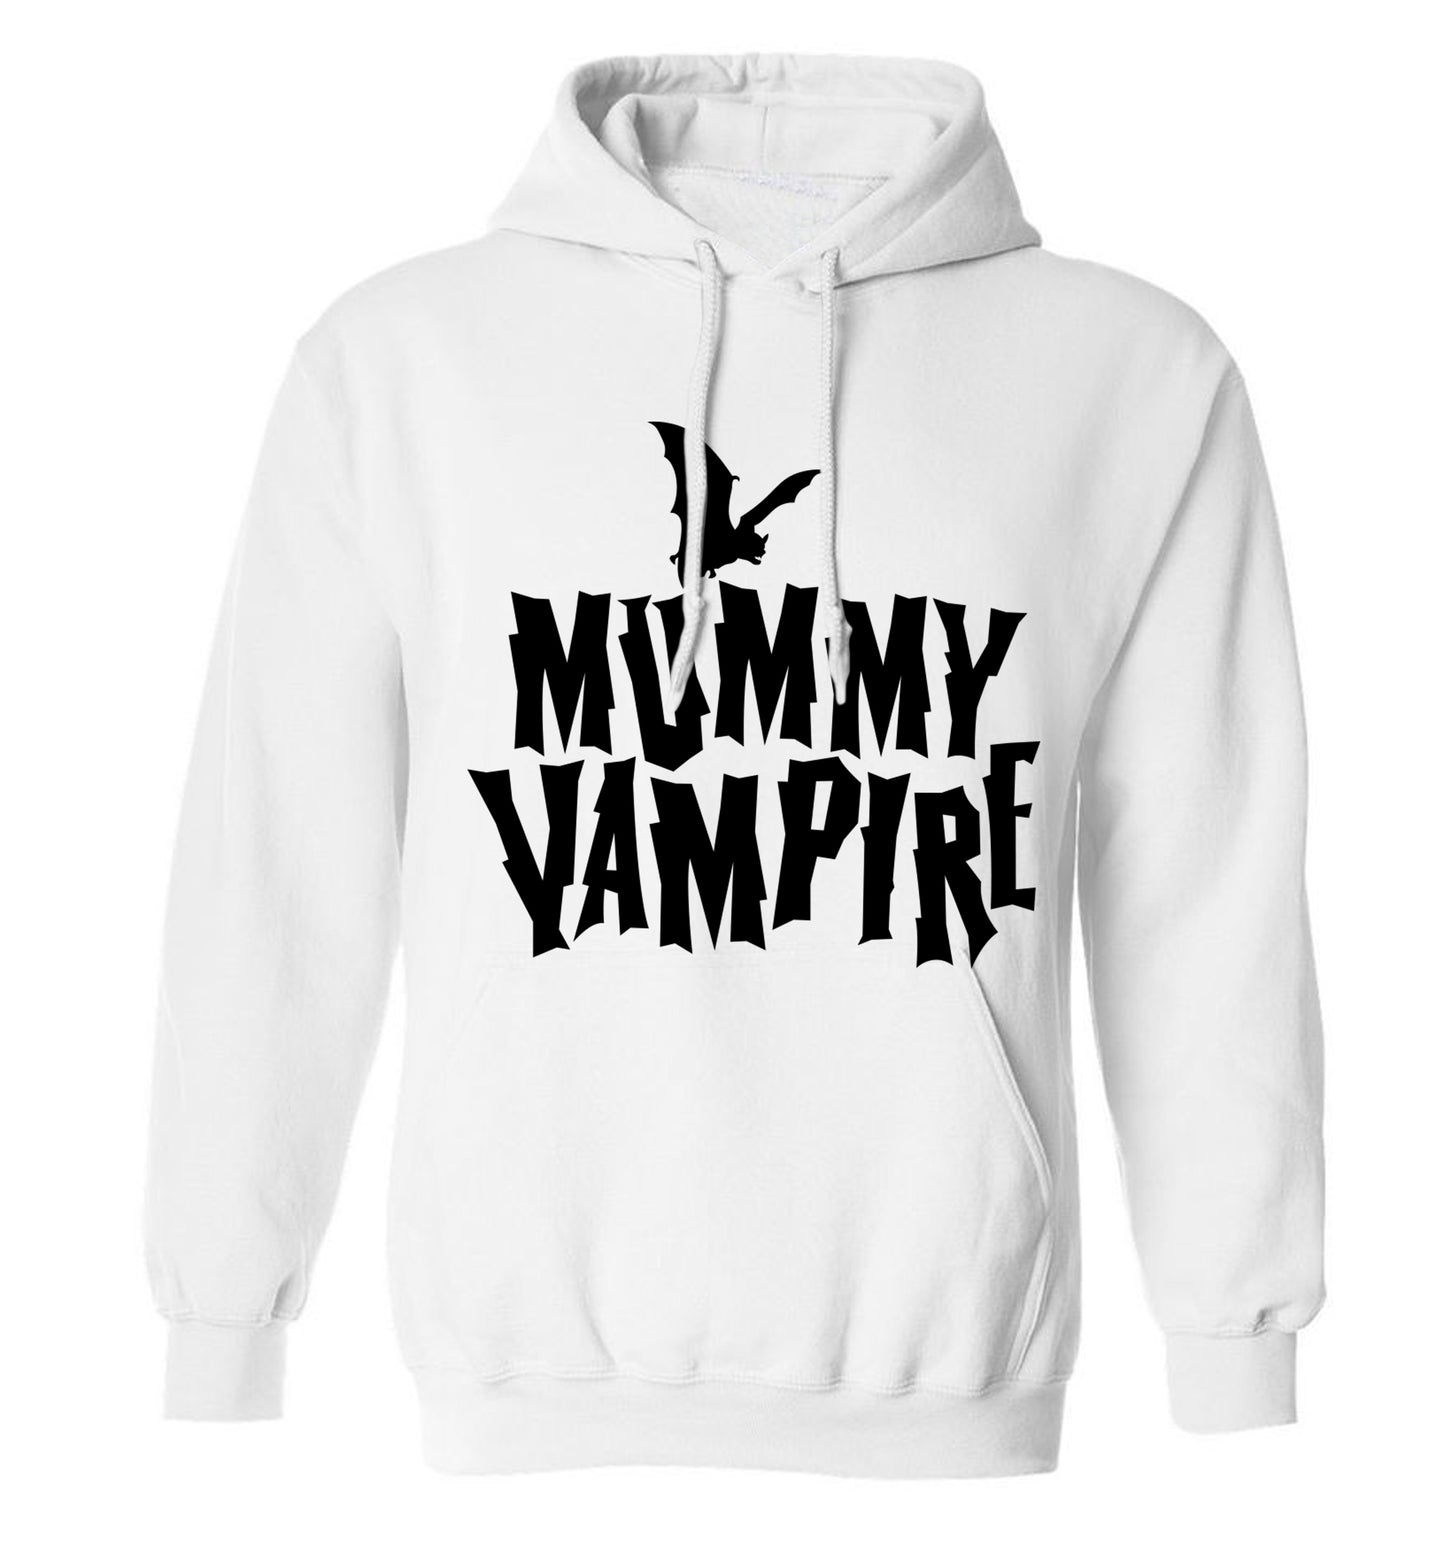 Mummy vampire adults unisex white hoodie 2XL